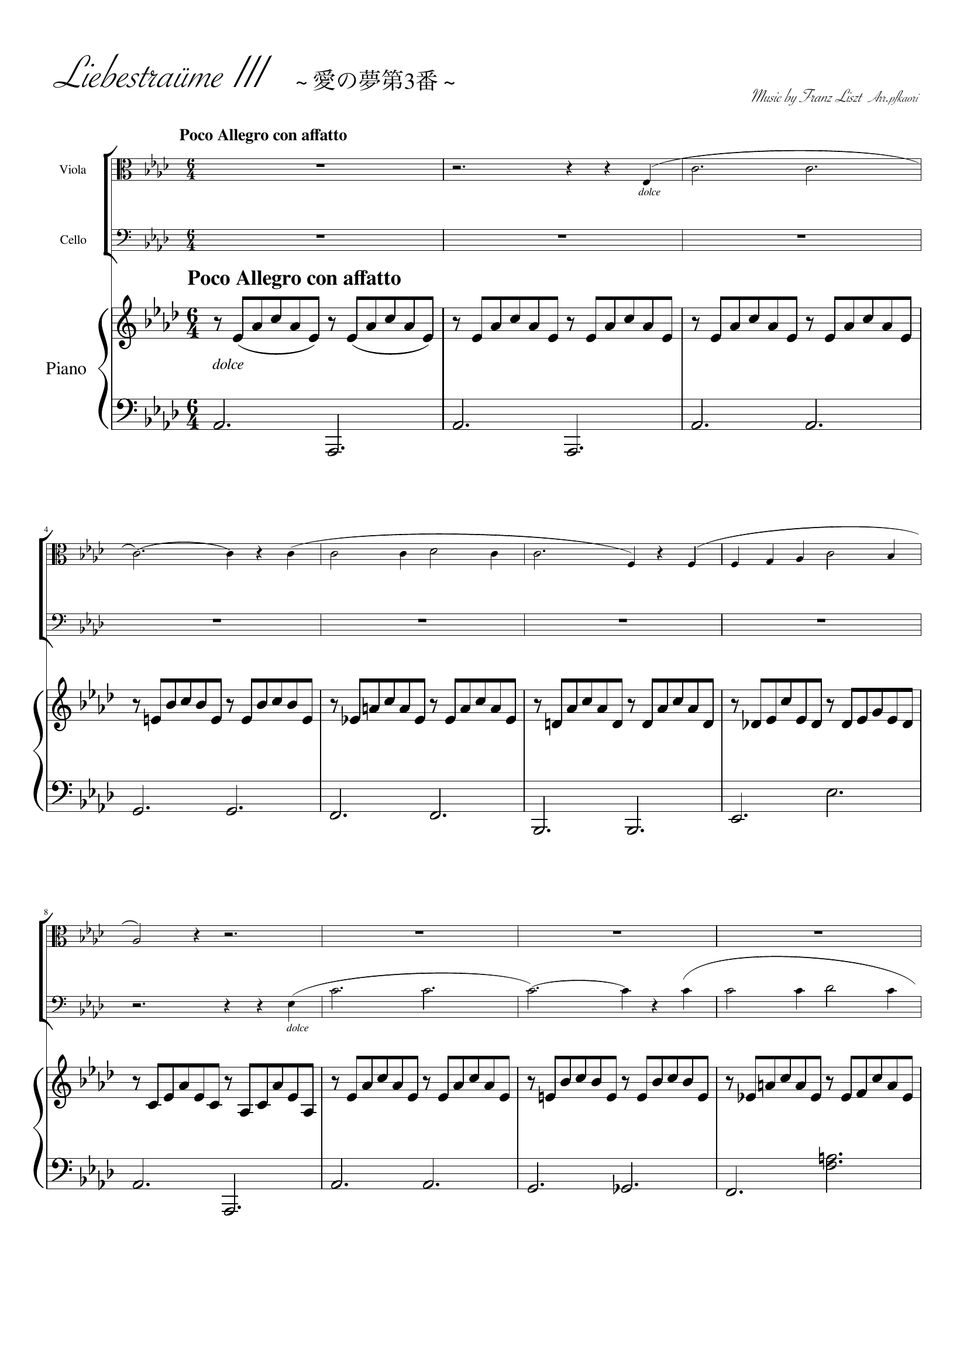 フランツ・リスト - 愛の夢愛3番 (As・ピアノトリオ/ヴィオラ&チェロ) by pfkaori